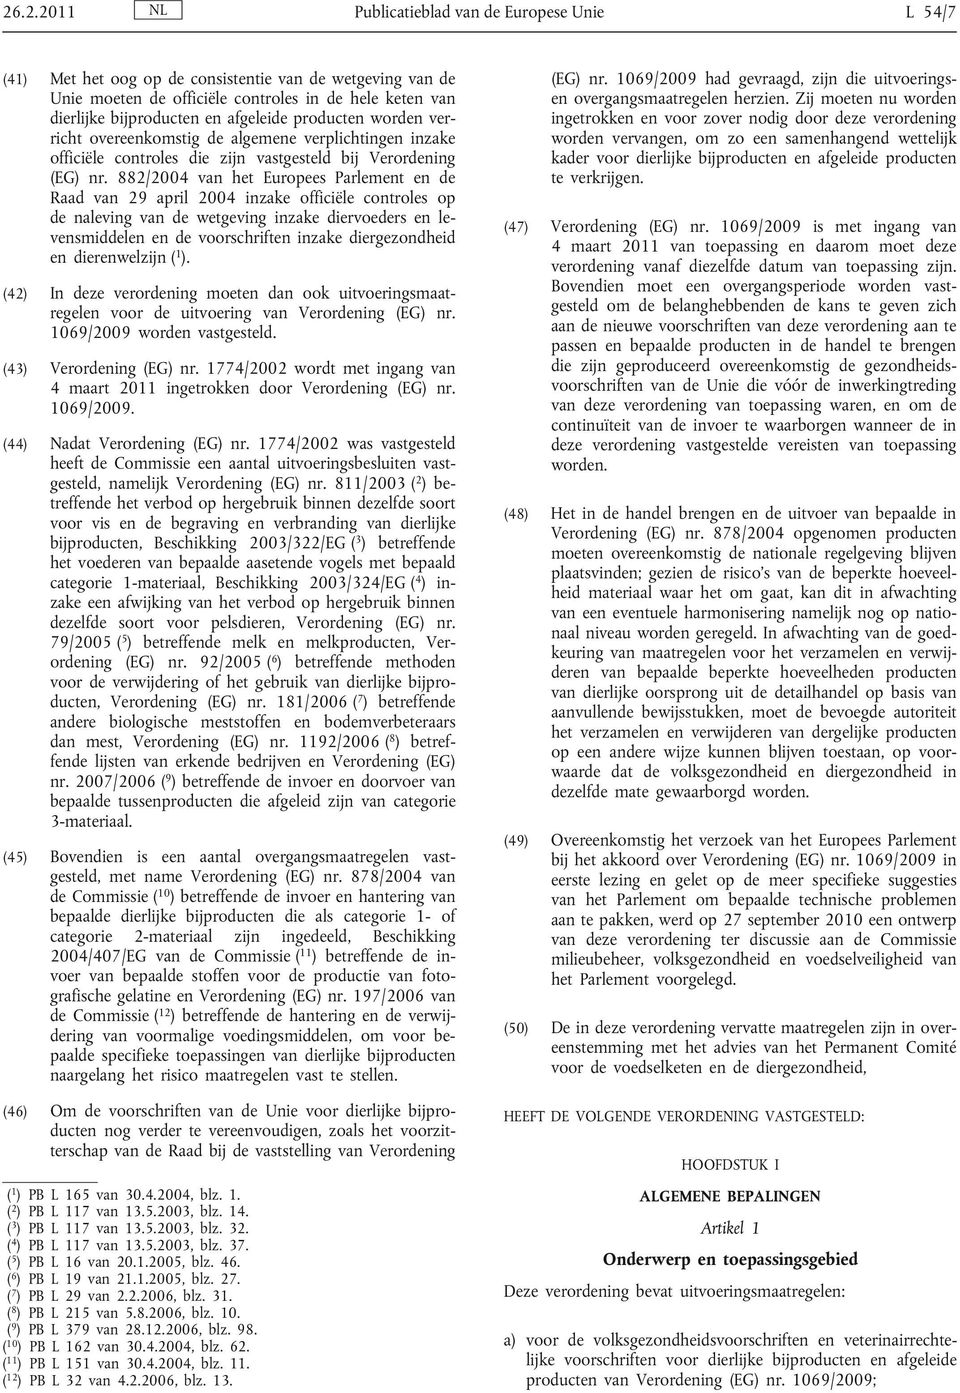 882/2004 van het Europees Parlement en de Raad van 29 april 2004 inzake officiële controles op de naleving van de wetgeving inzake diervoeders en levensmiddelen en de voorschriften inzake